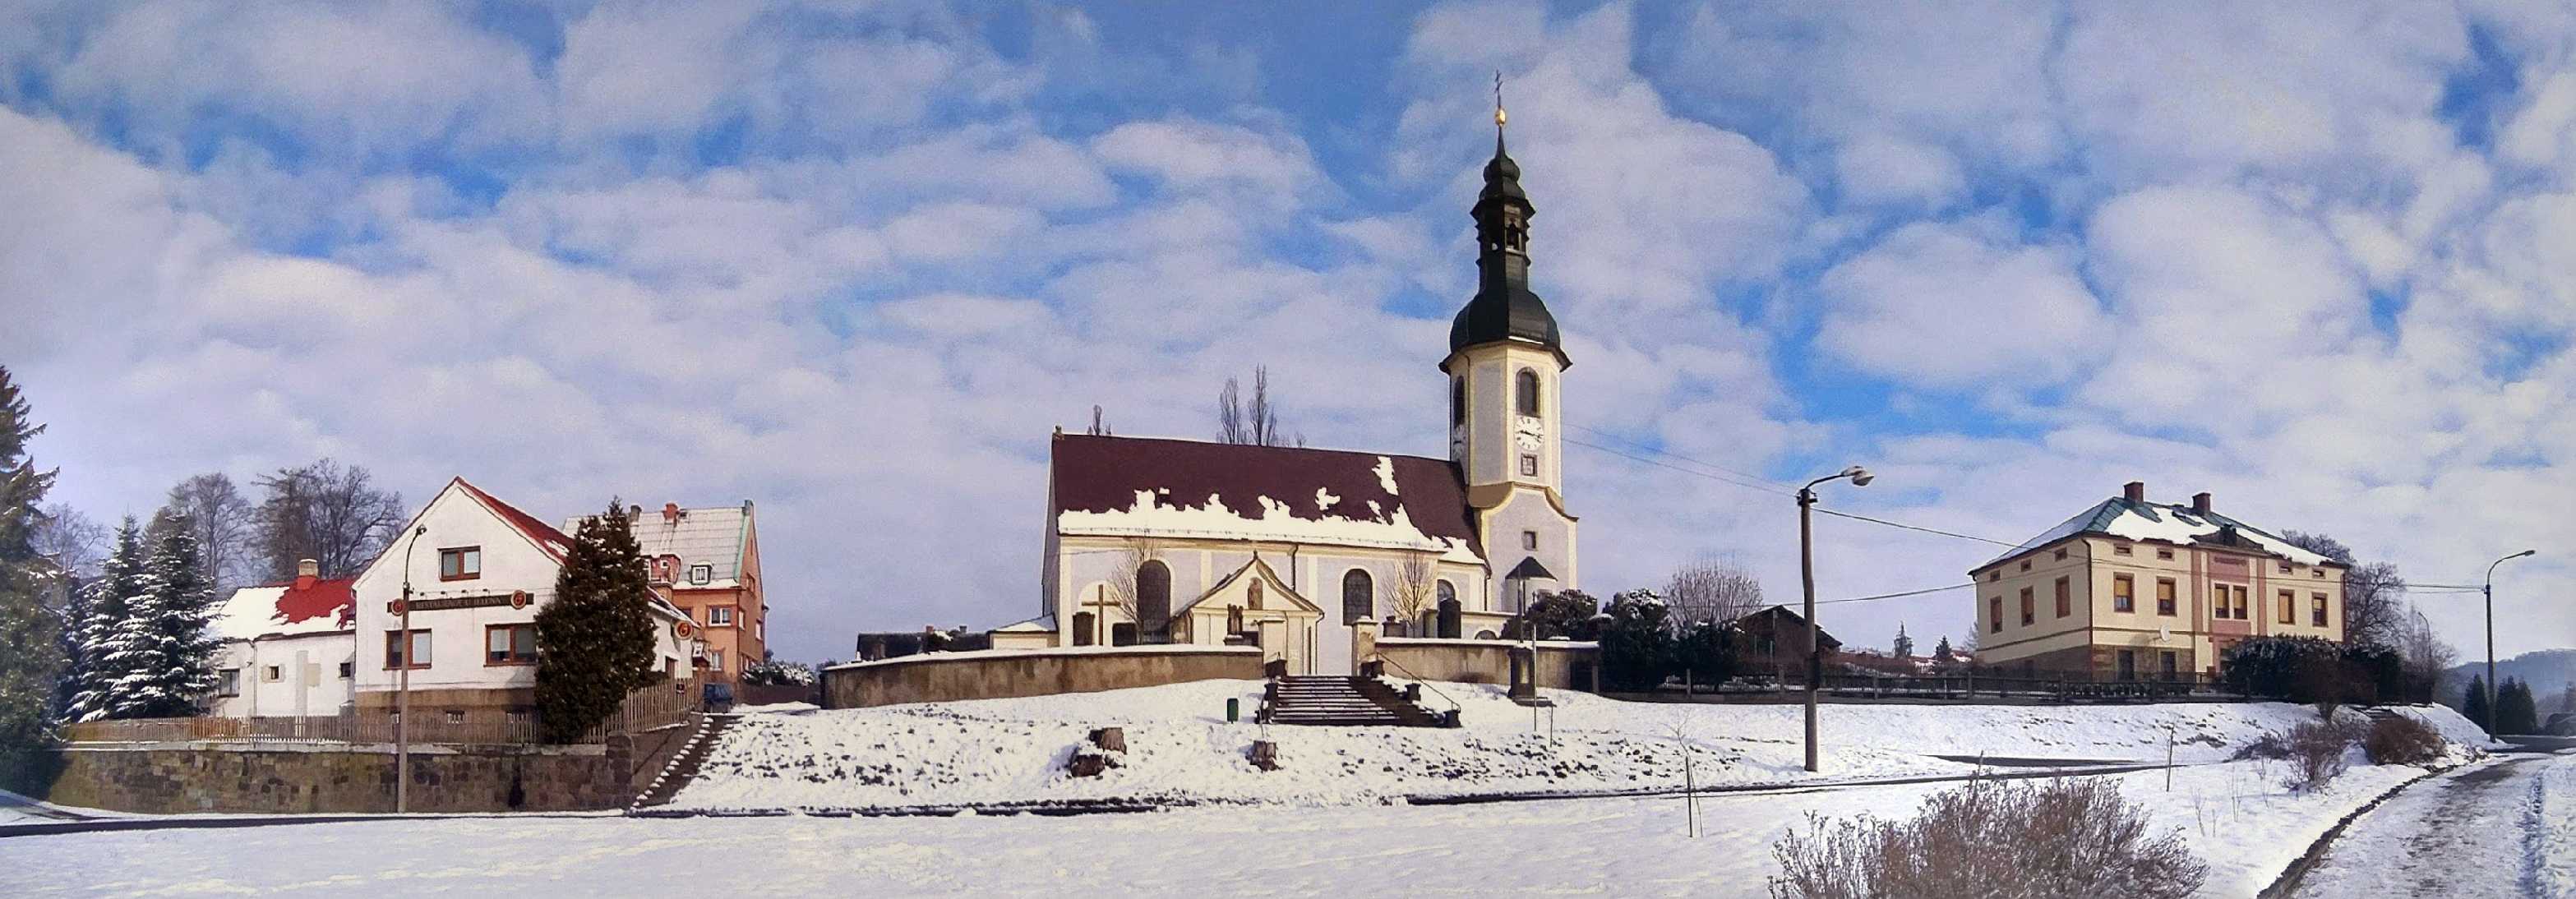 Kostel sv. Bartoloměje ve Velkém Šenově - Foto Angelika Špicarová 1023